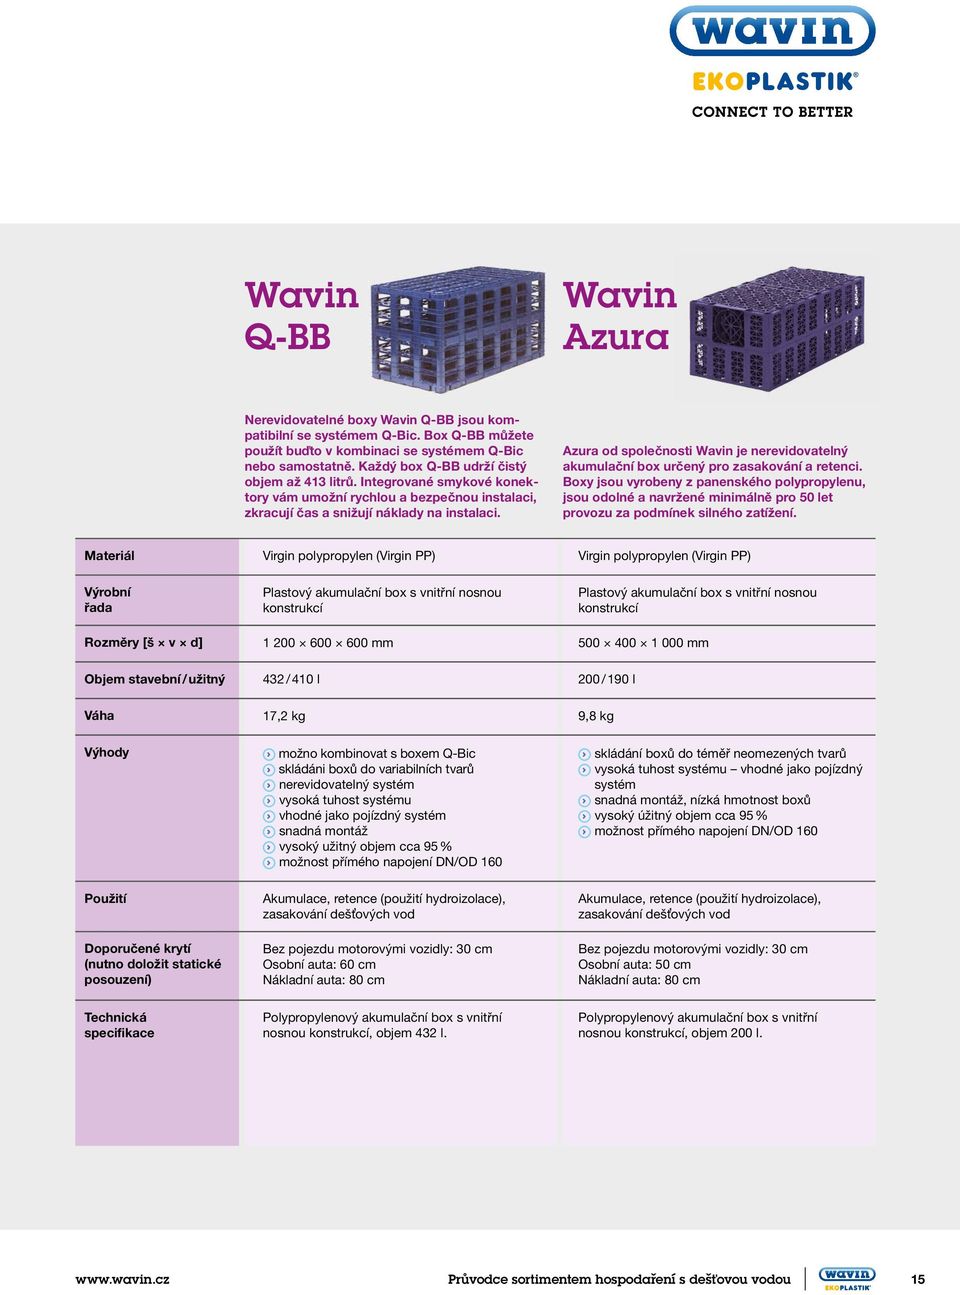 Azura od společnosti Wavin je nerevidovatelný akumulační box určený pro zasakování a retenci.